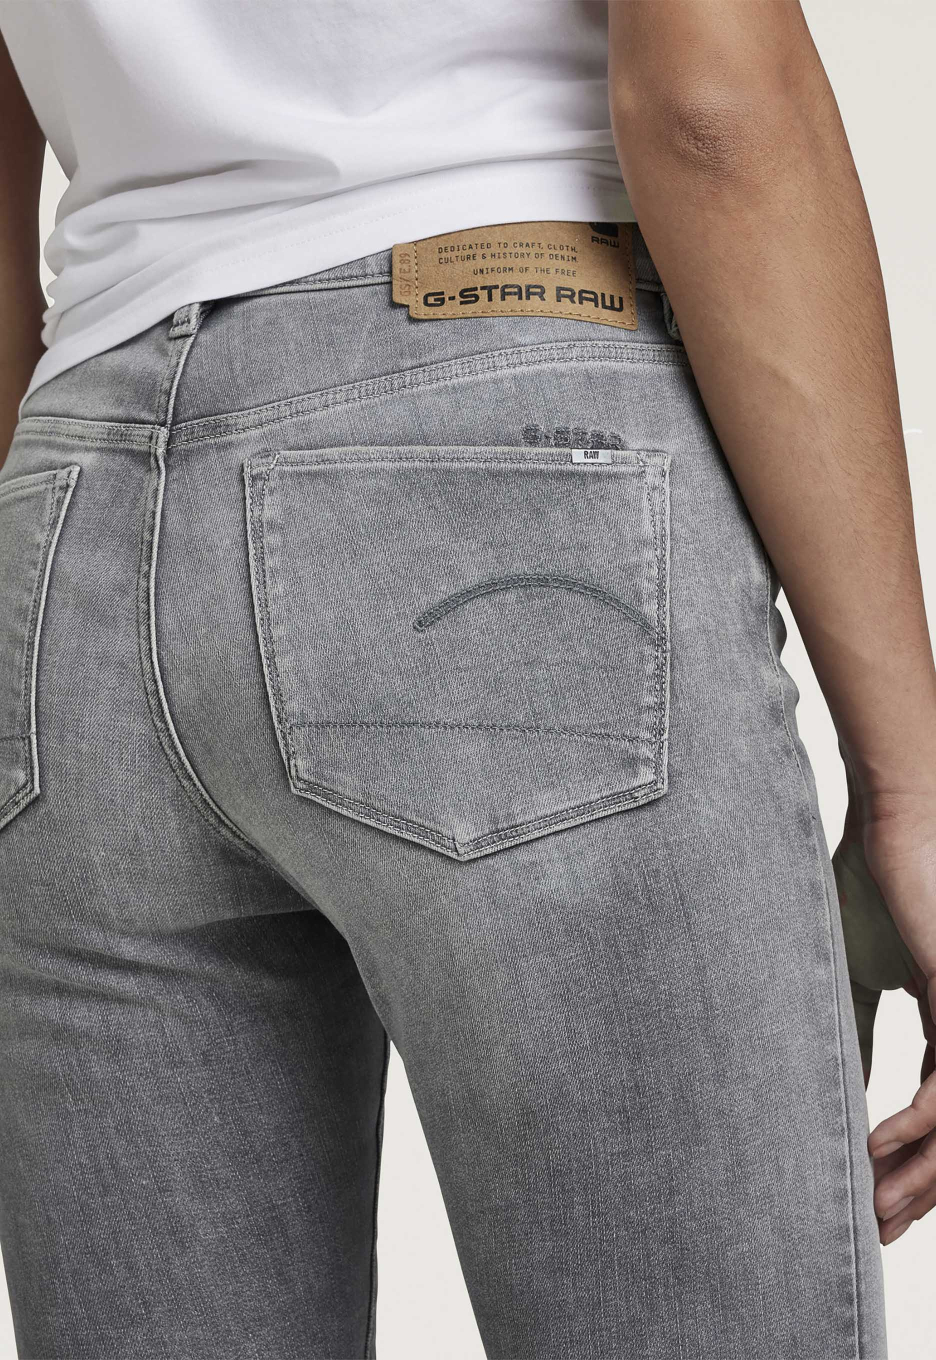 RAW Skinny WMN Jeans Grey | Open32.nl